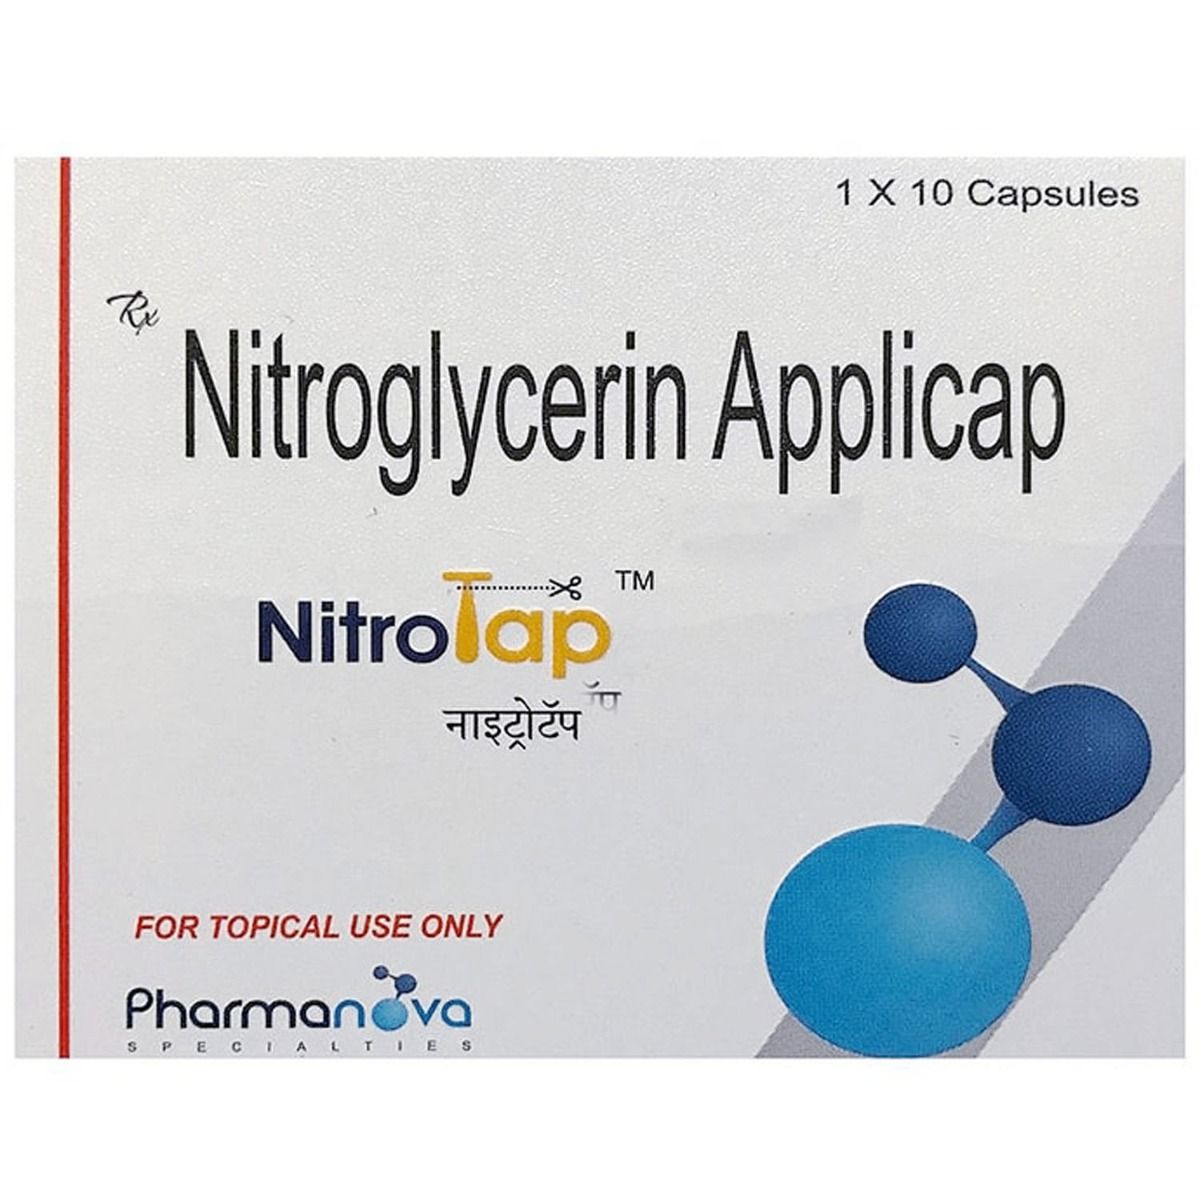 Buy Nitrotap Applicap 10's Online